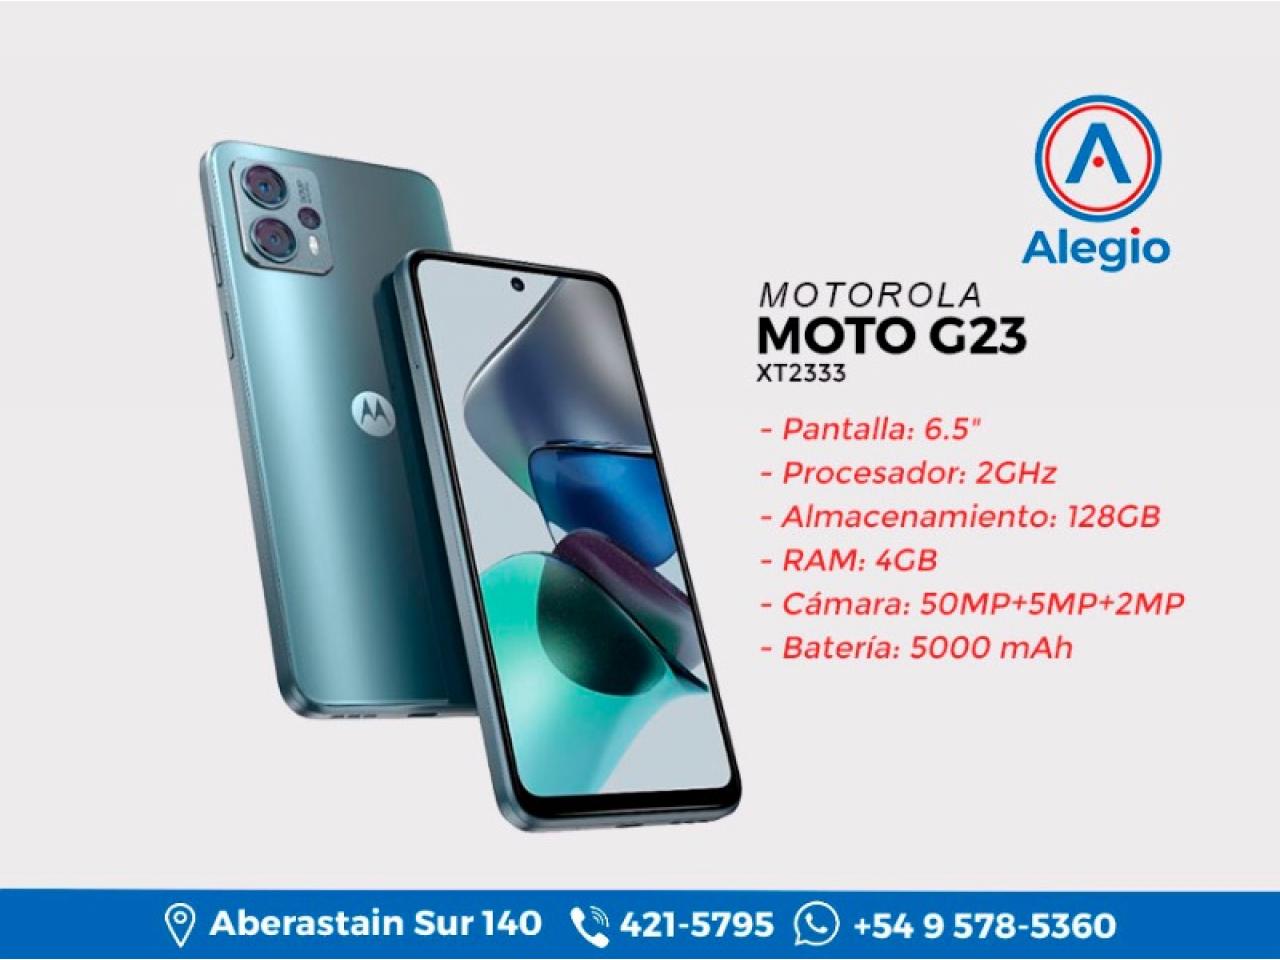 Moto g23: Sonido estéreo Dolby Atmos y pantalla HD+ - Motorola Argentina